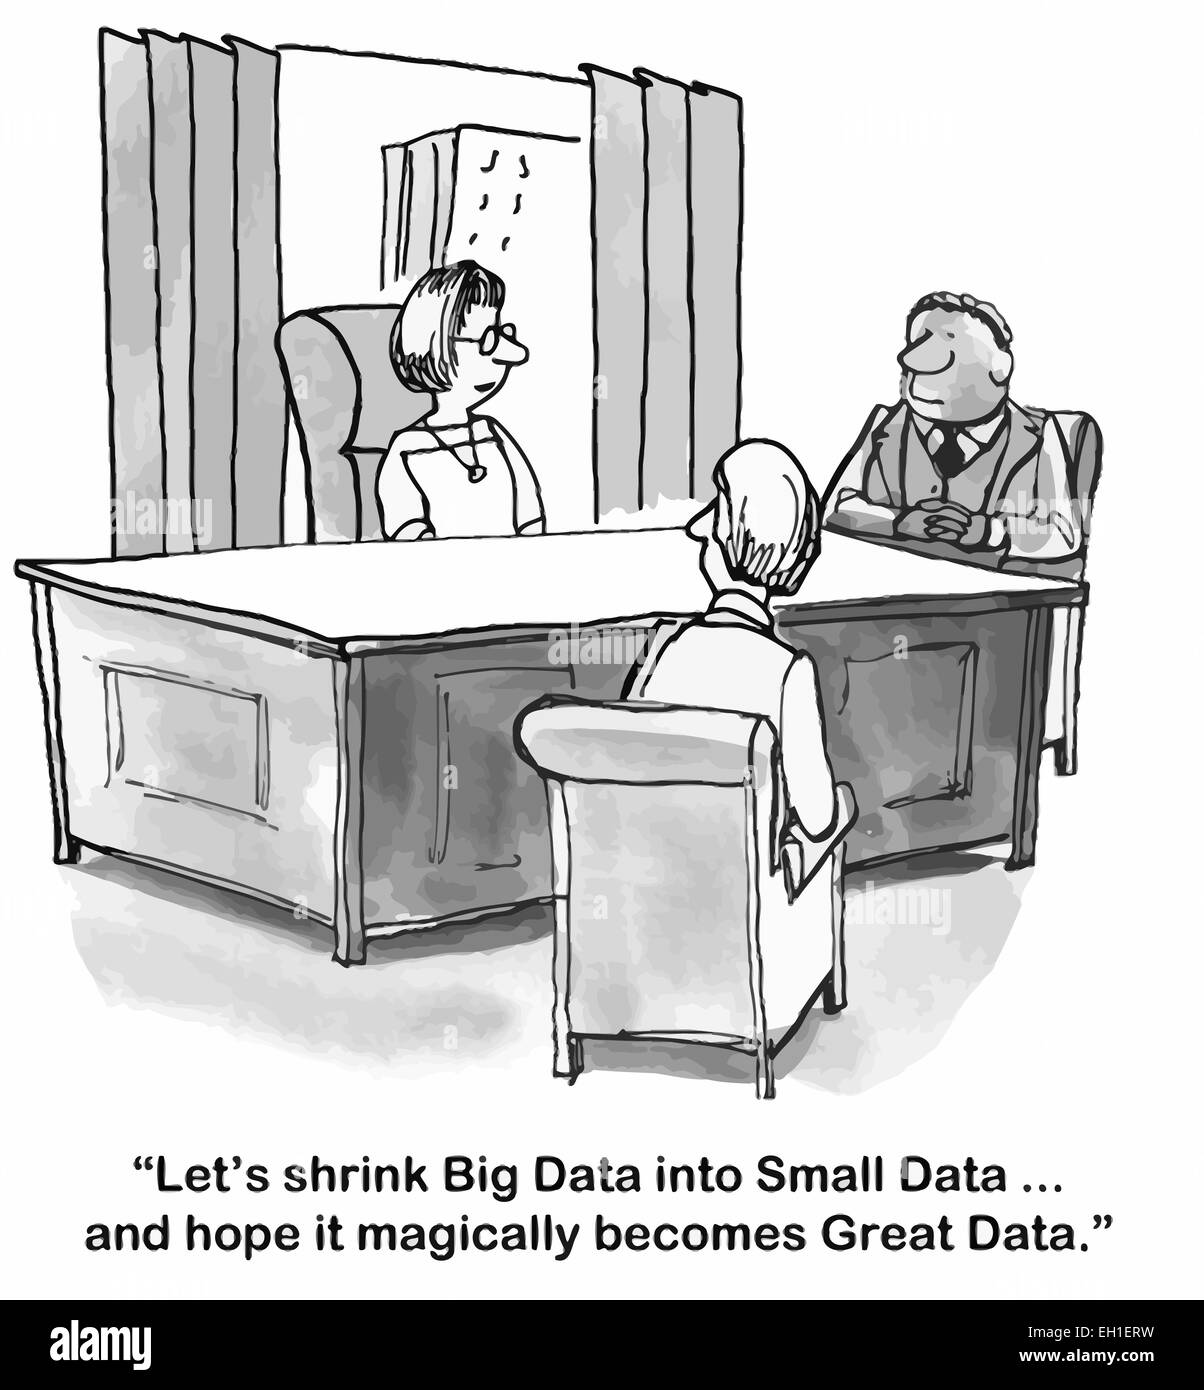 Cartoon di imprenditrice dicendo al team, cerchiamo di termoretrazione di dati di grandi dimensioni in piccoli dati... e spero che magicamente diventa grande dati. Illustrazione Vettoriale